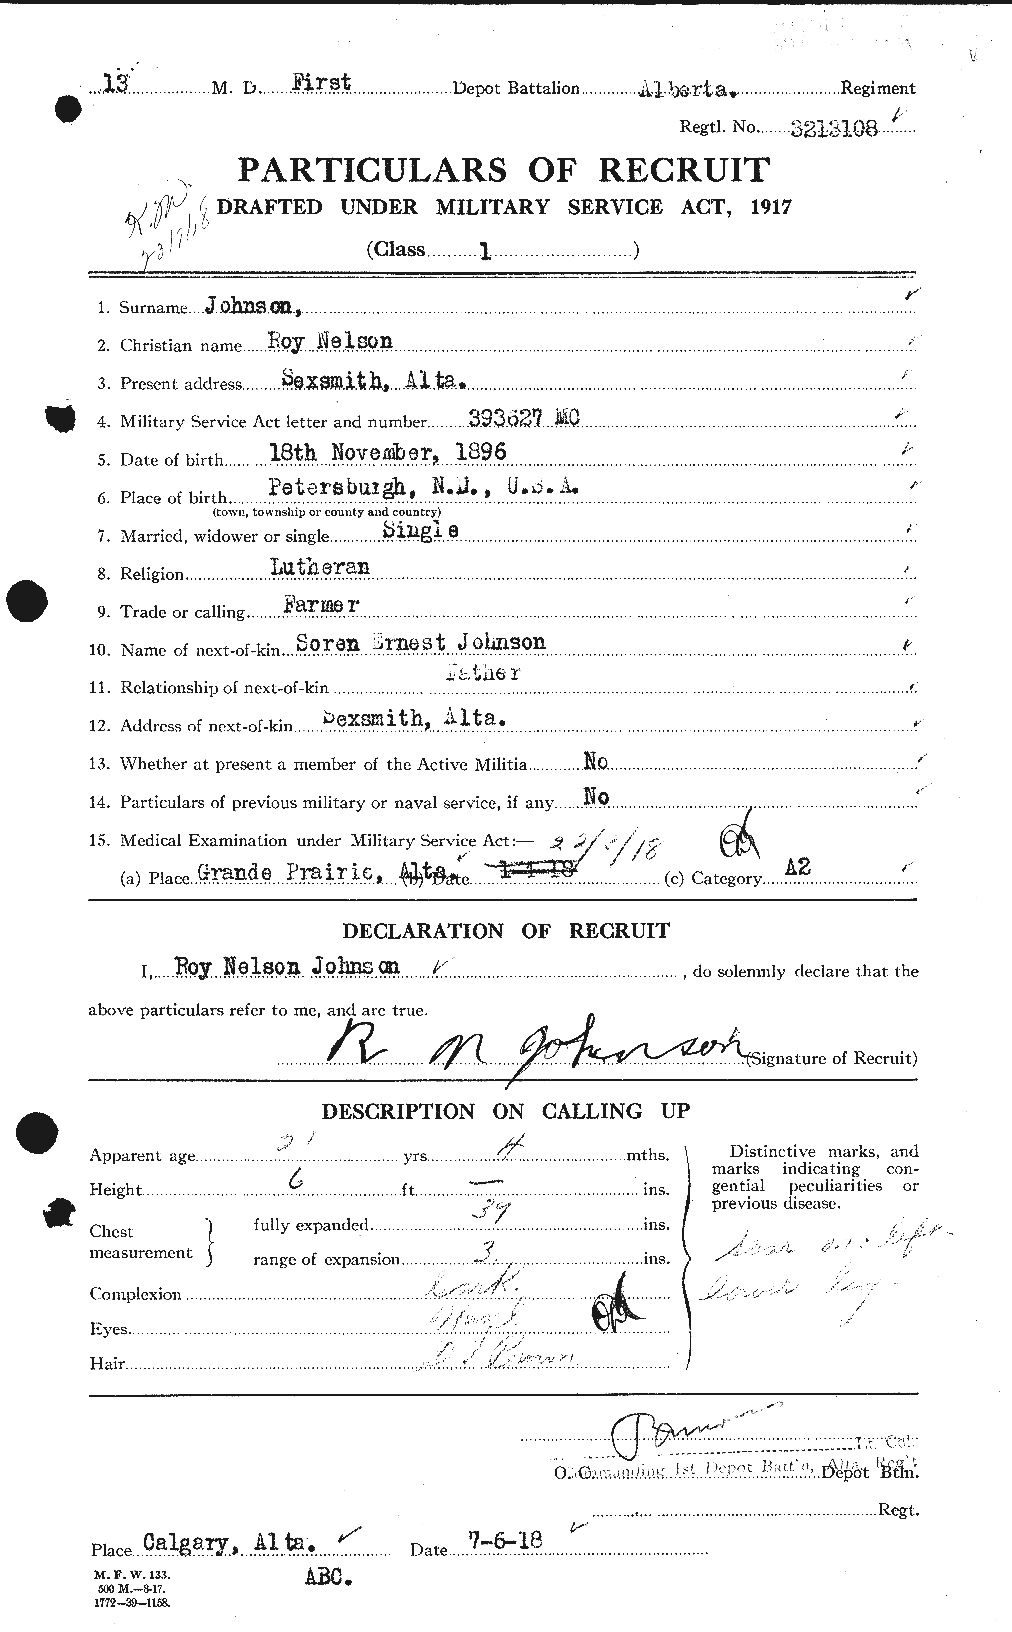 Dossiers du Personnel de la Première Guerre mondiale - CEC 417407a